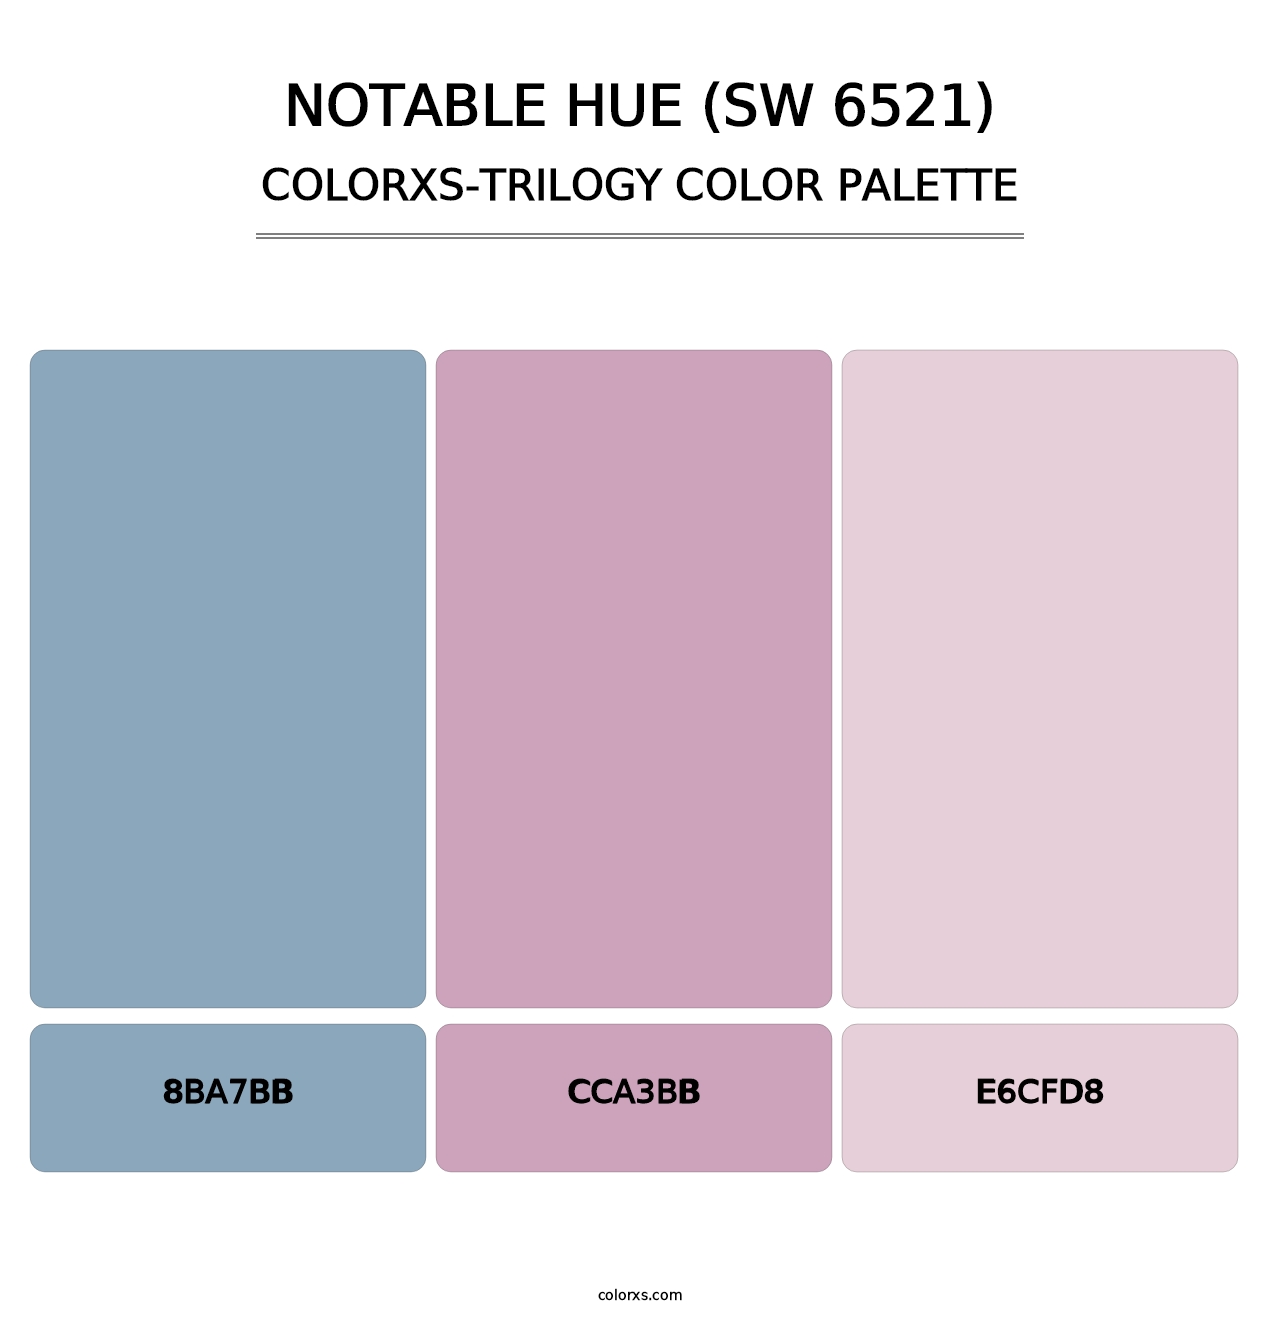 Notable Hue (SW 6521) - Colorxs Trilogy Palette